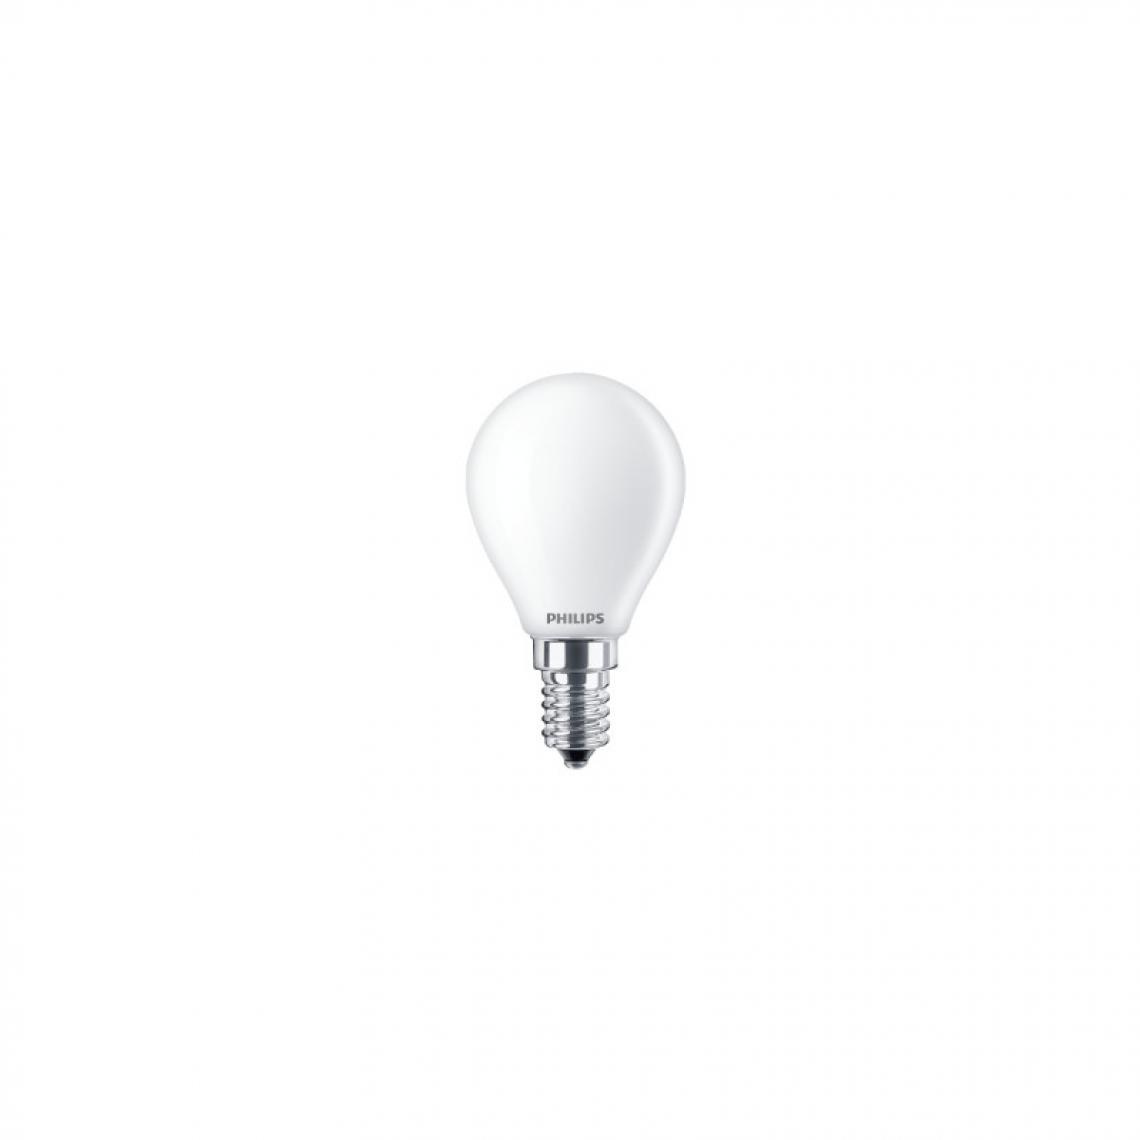 Philips - Ampoule LED sphéroïdale PHILIPS - EyeComfort - 4,3W - 470 lumens - 6500K - E14 - 93016 - Ampoules LED